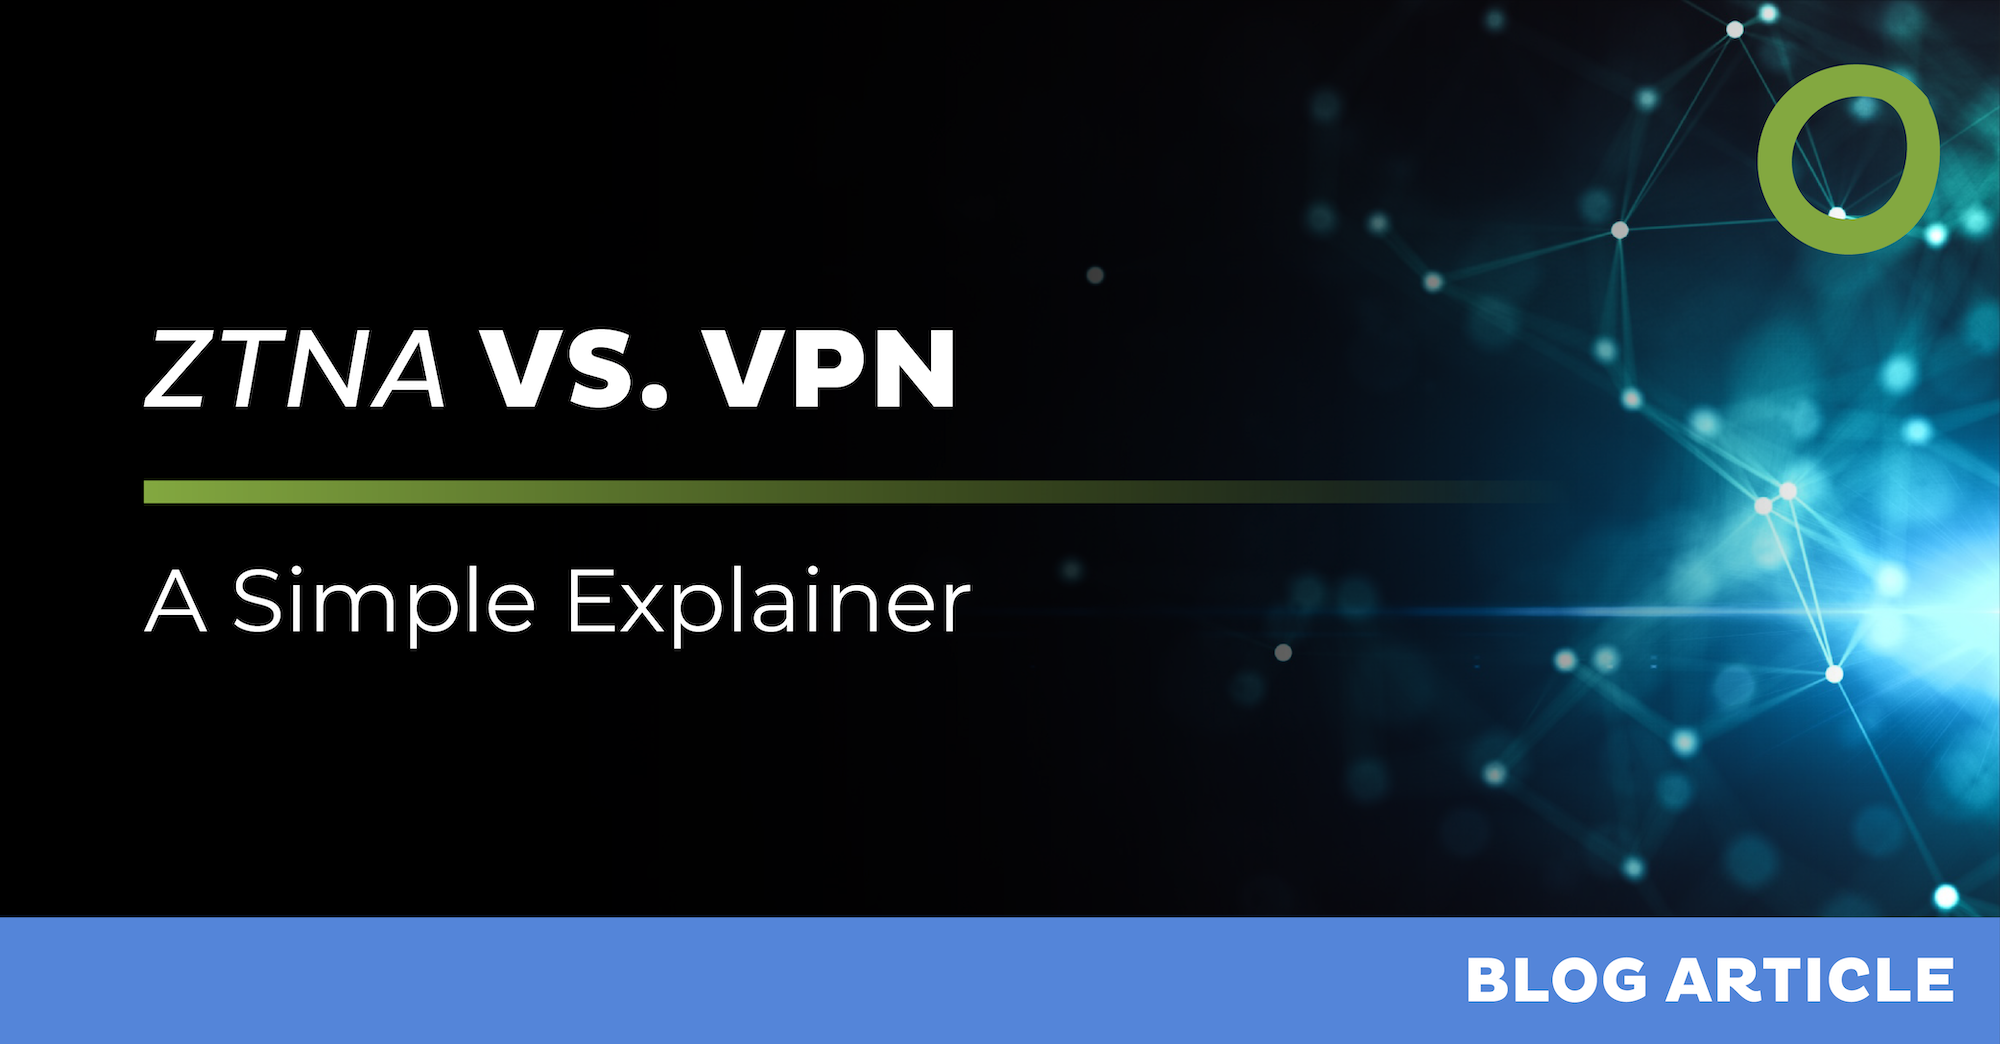 ZTNA vs VPN